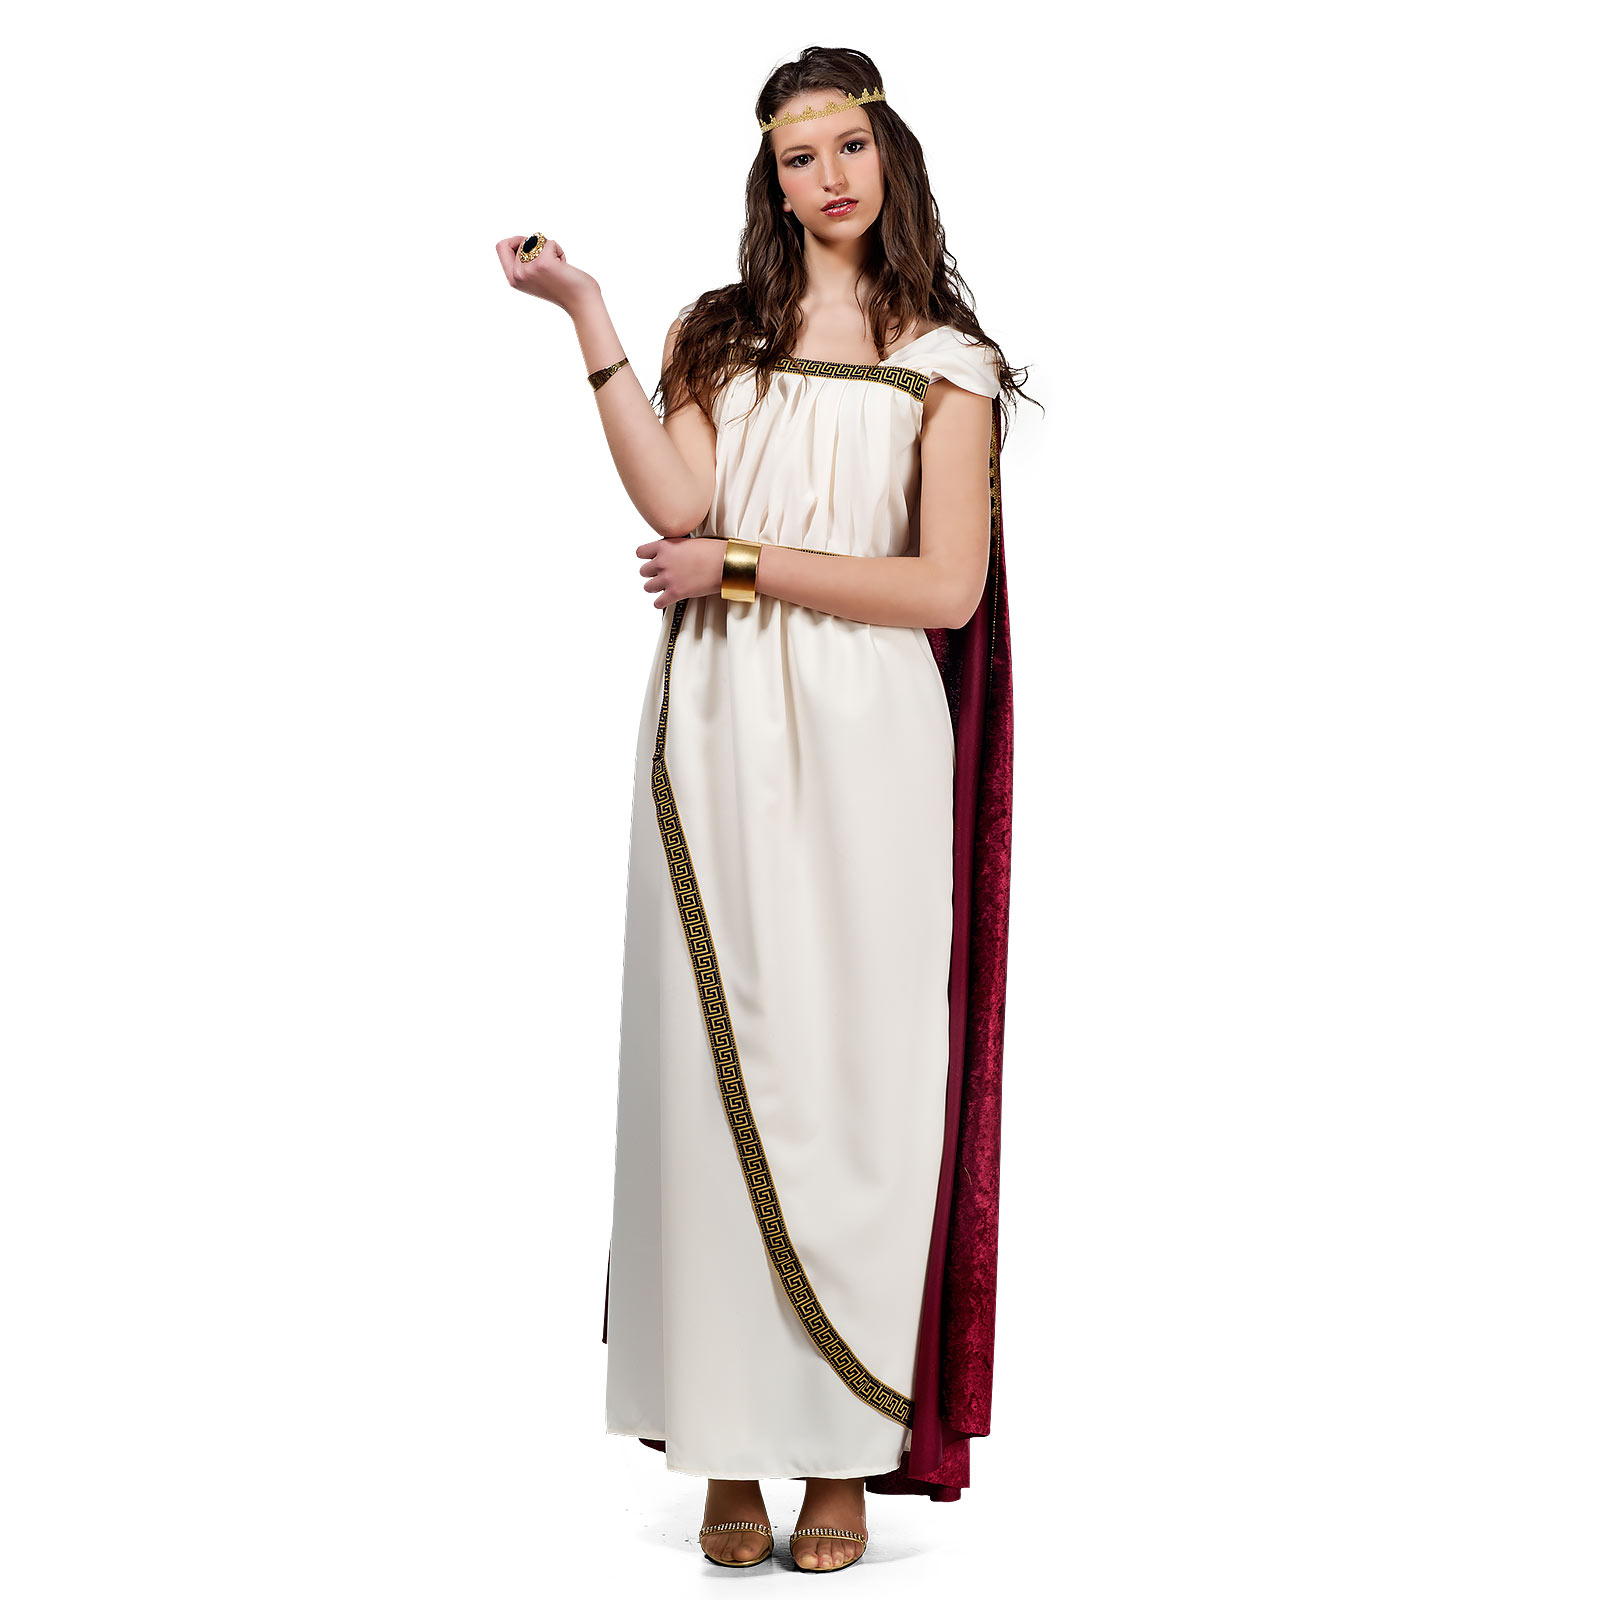 Trojaanse Vrouw - Kostuum Dames